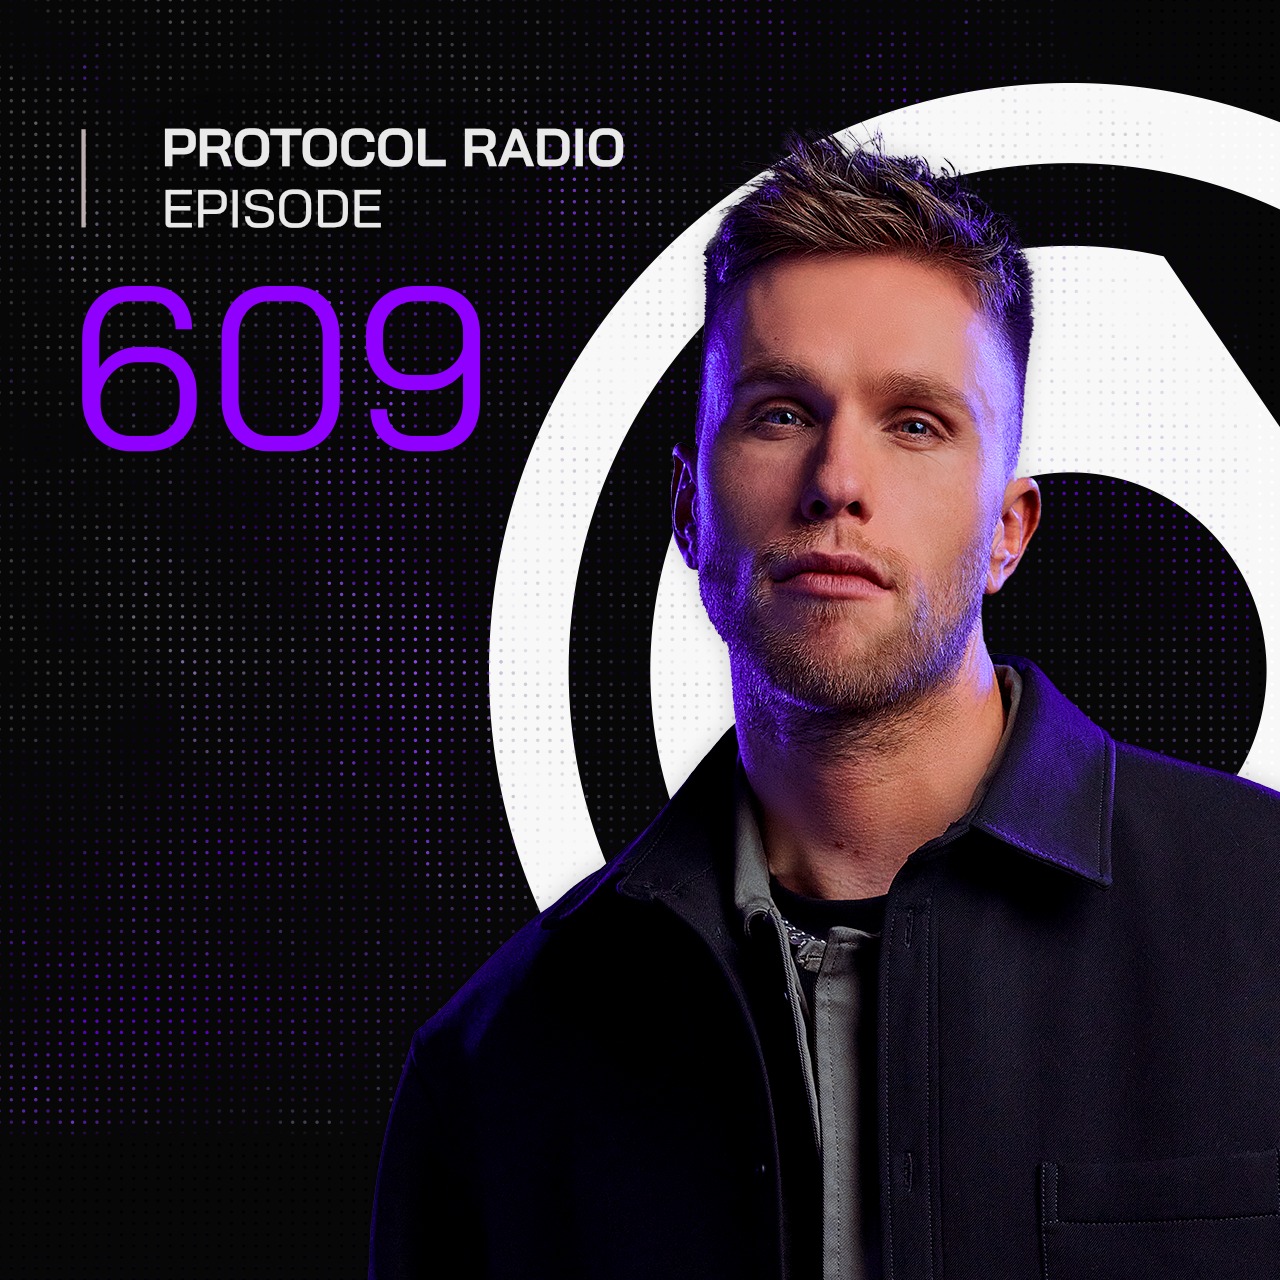 Protocol Radio #609